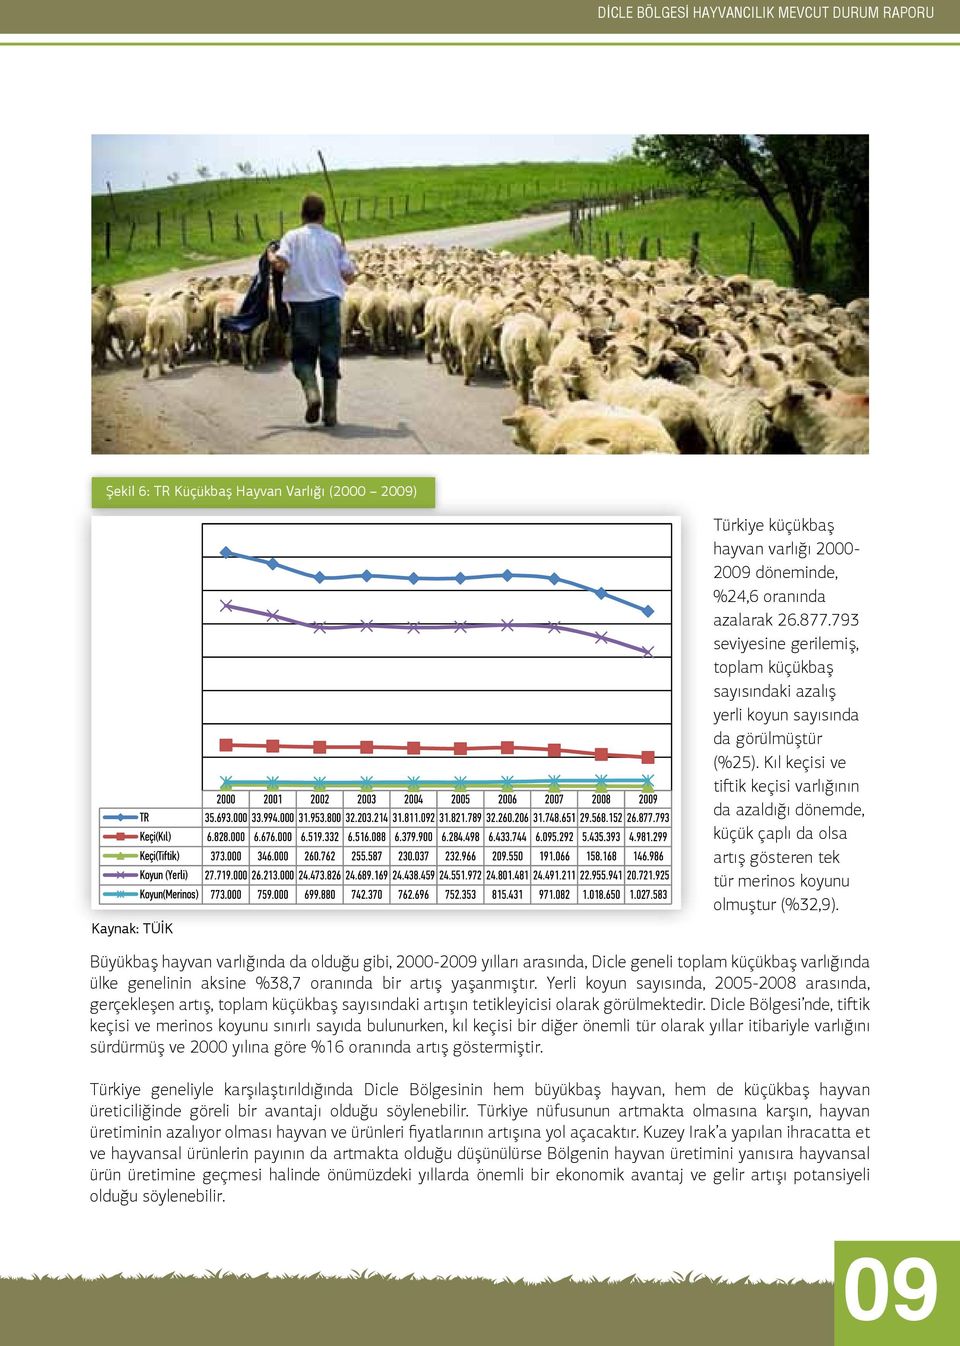 Kıl keçisi ve tiftik keçisi varlığının da azaldığı dönemde, küçük çaplı da olsa artış gösteren tek tür merinos koyunu olmuştur (%32,9).